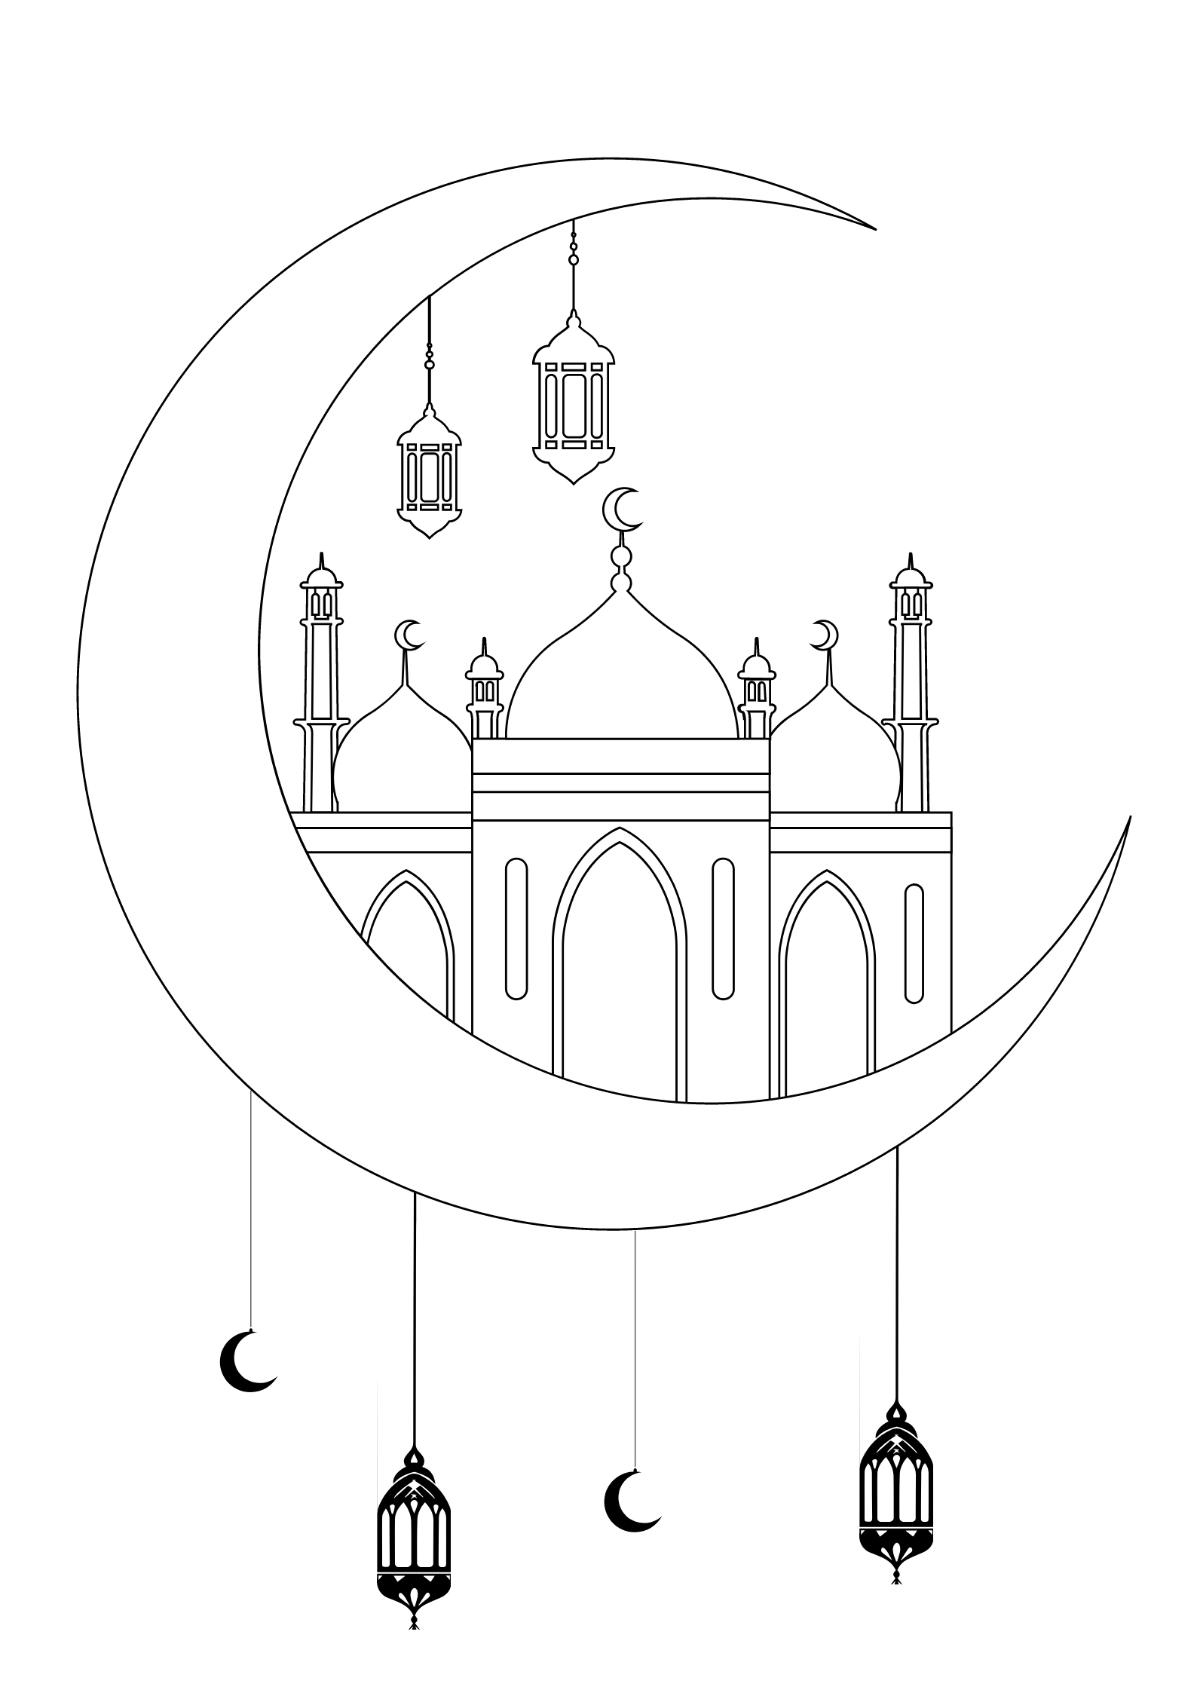 Easy Drawing of Eid Festival | Ramadan Drawing | Easy Ramazan Drawing |  Easy Mosque Drawing - YouTube